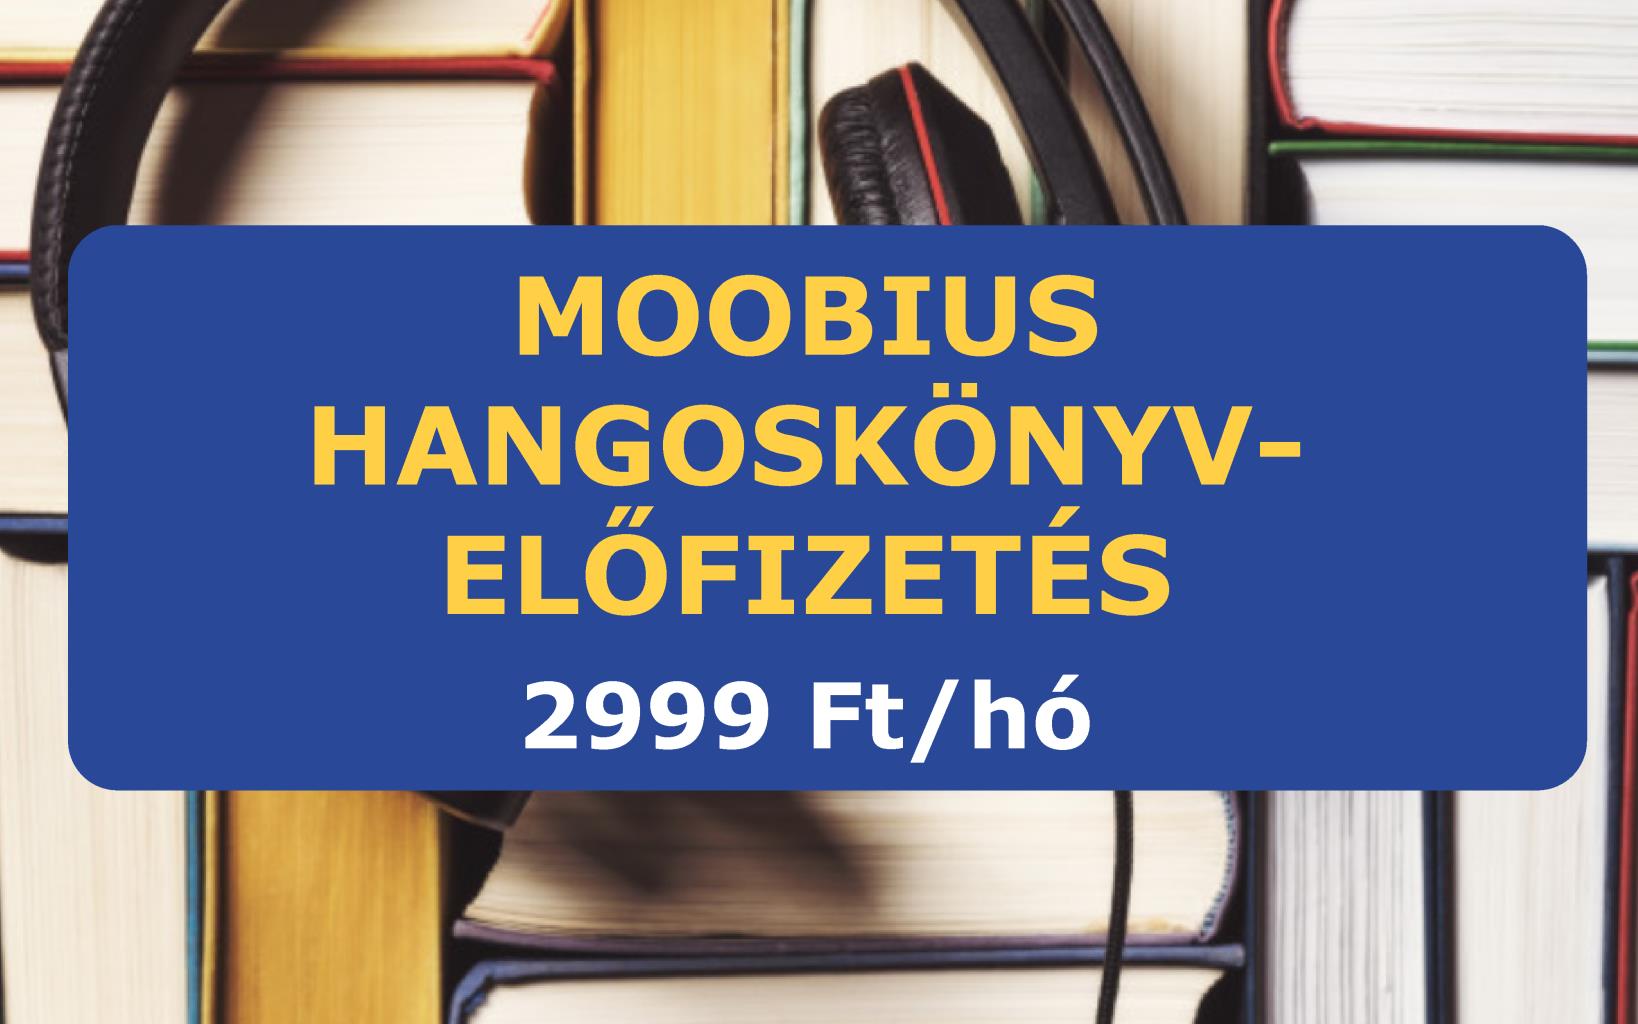 Moobius hangoskönyv-előfizetés (2999 Ft/ hó)